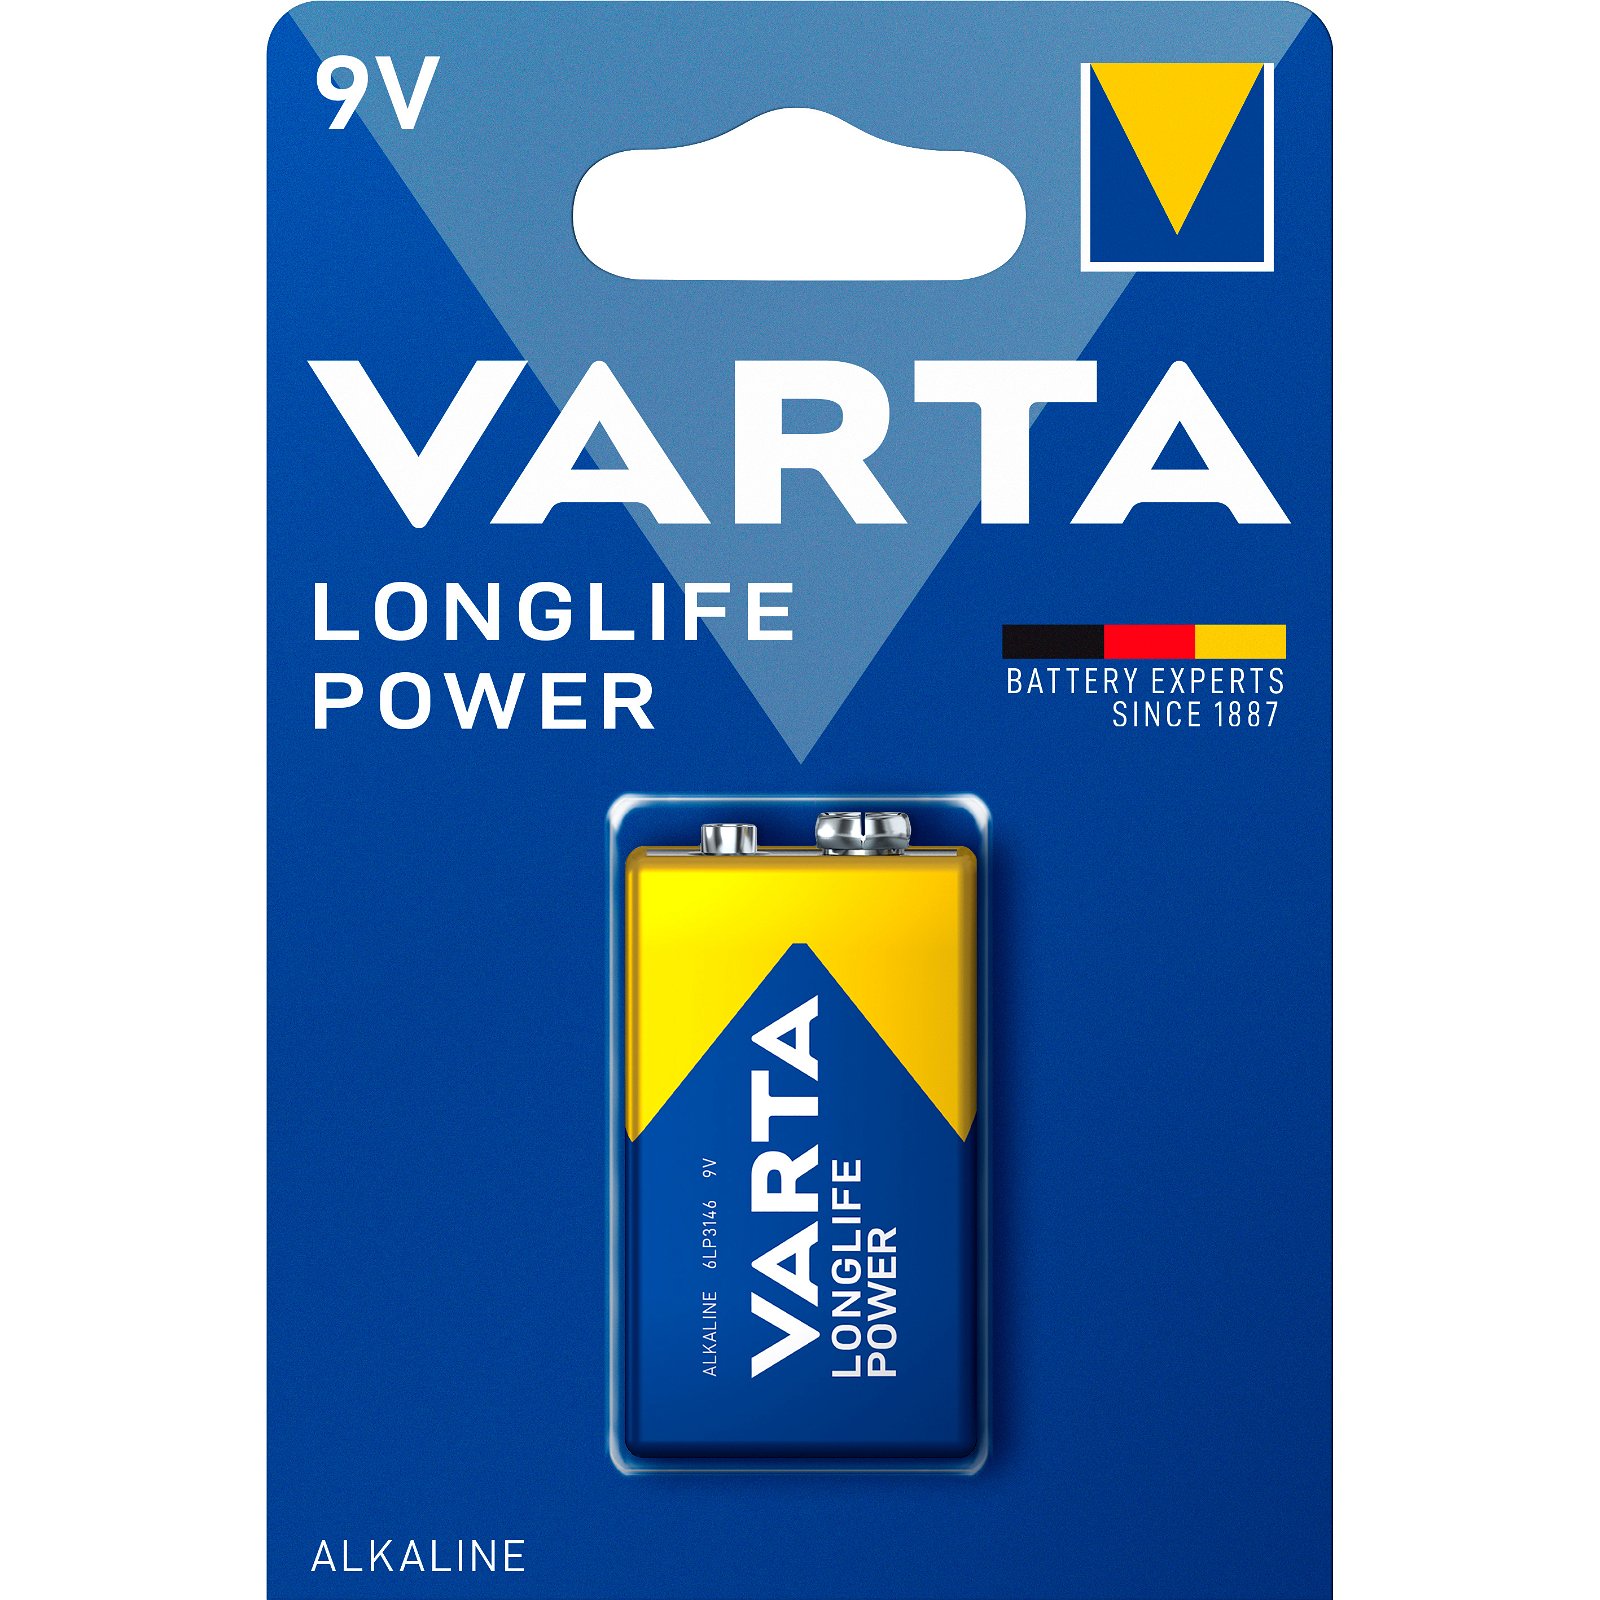 VARTA LongLife Power batteri 9V/6LP3126 9 v 1 stk